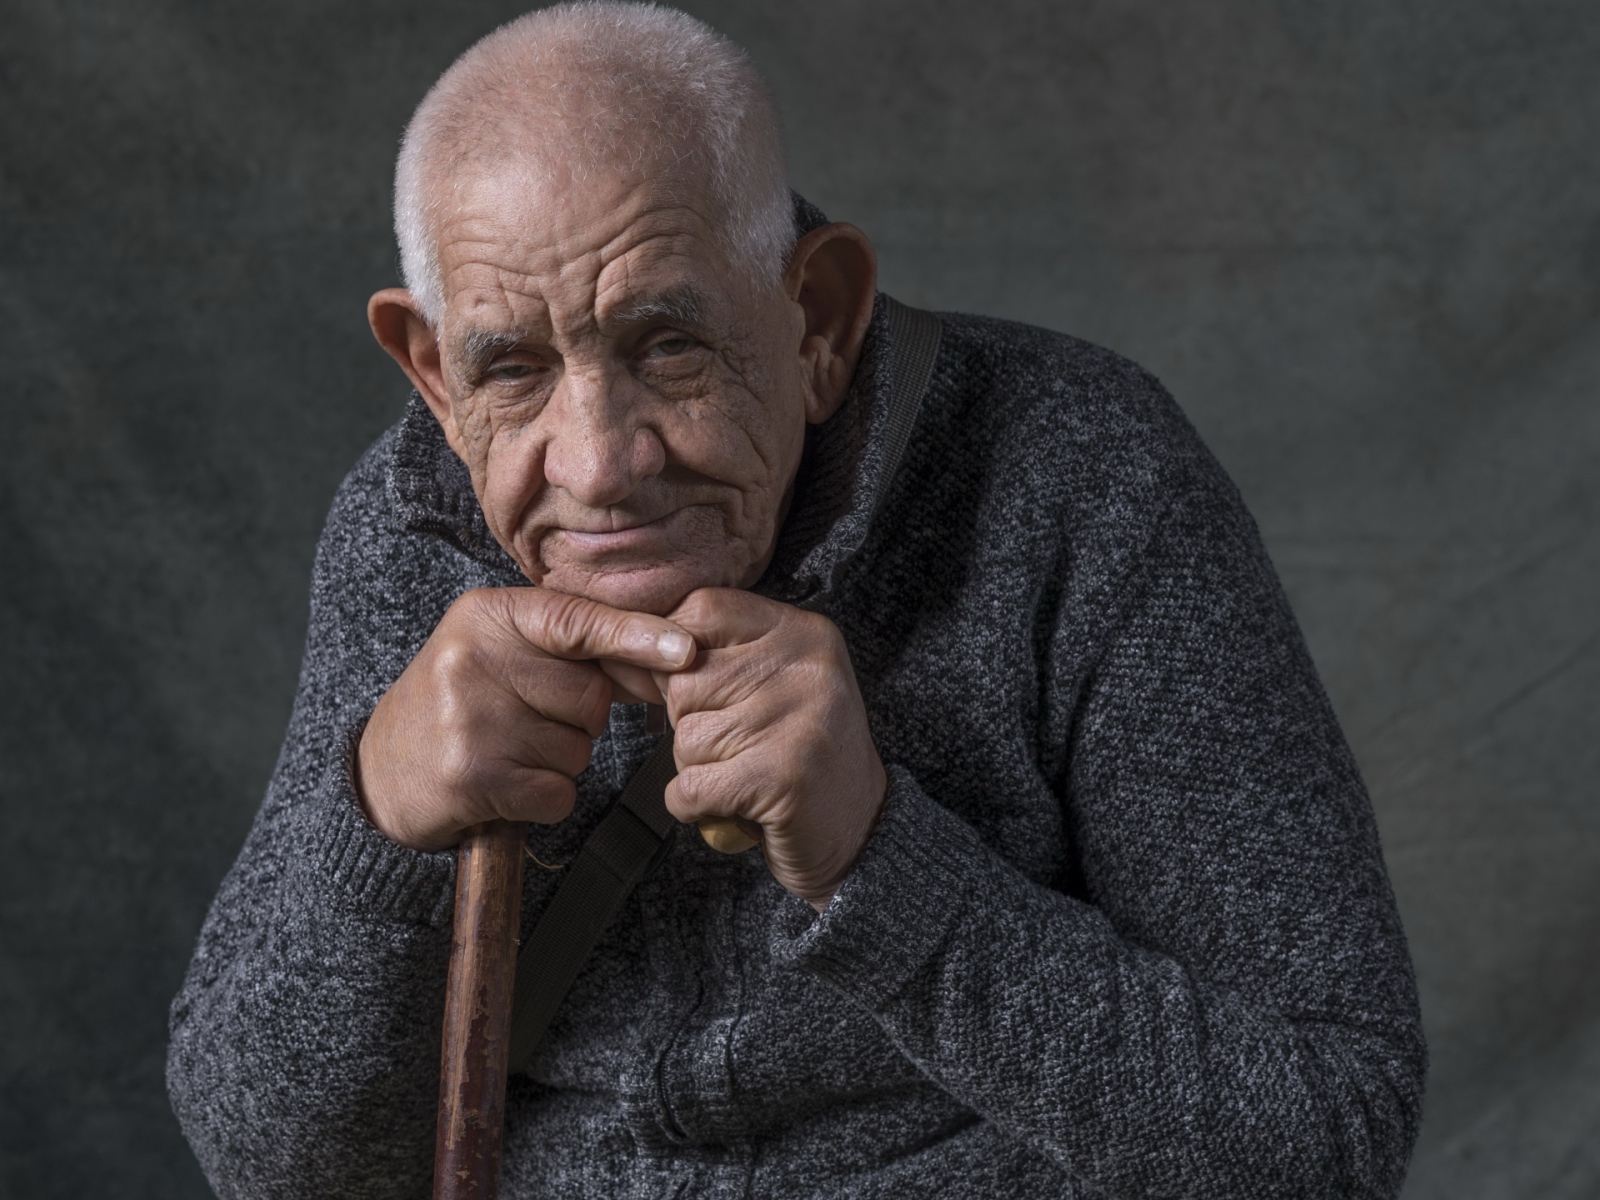 Пожилой мужчина в теплом свитере на сером фоне 